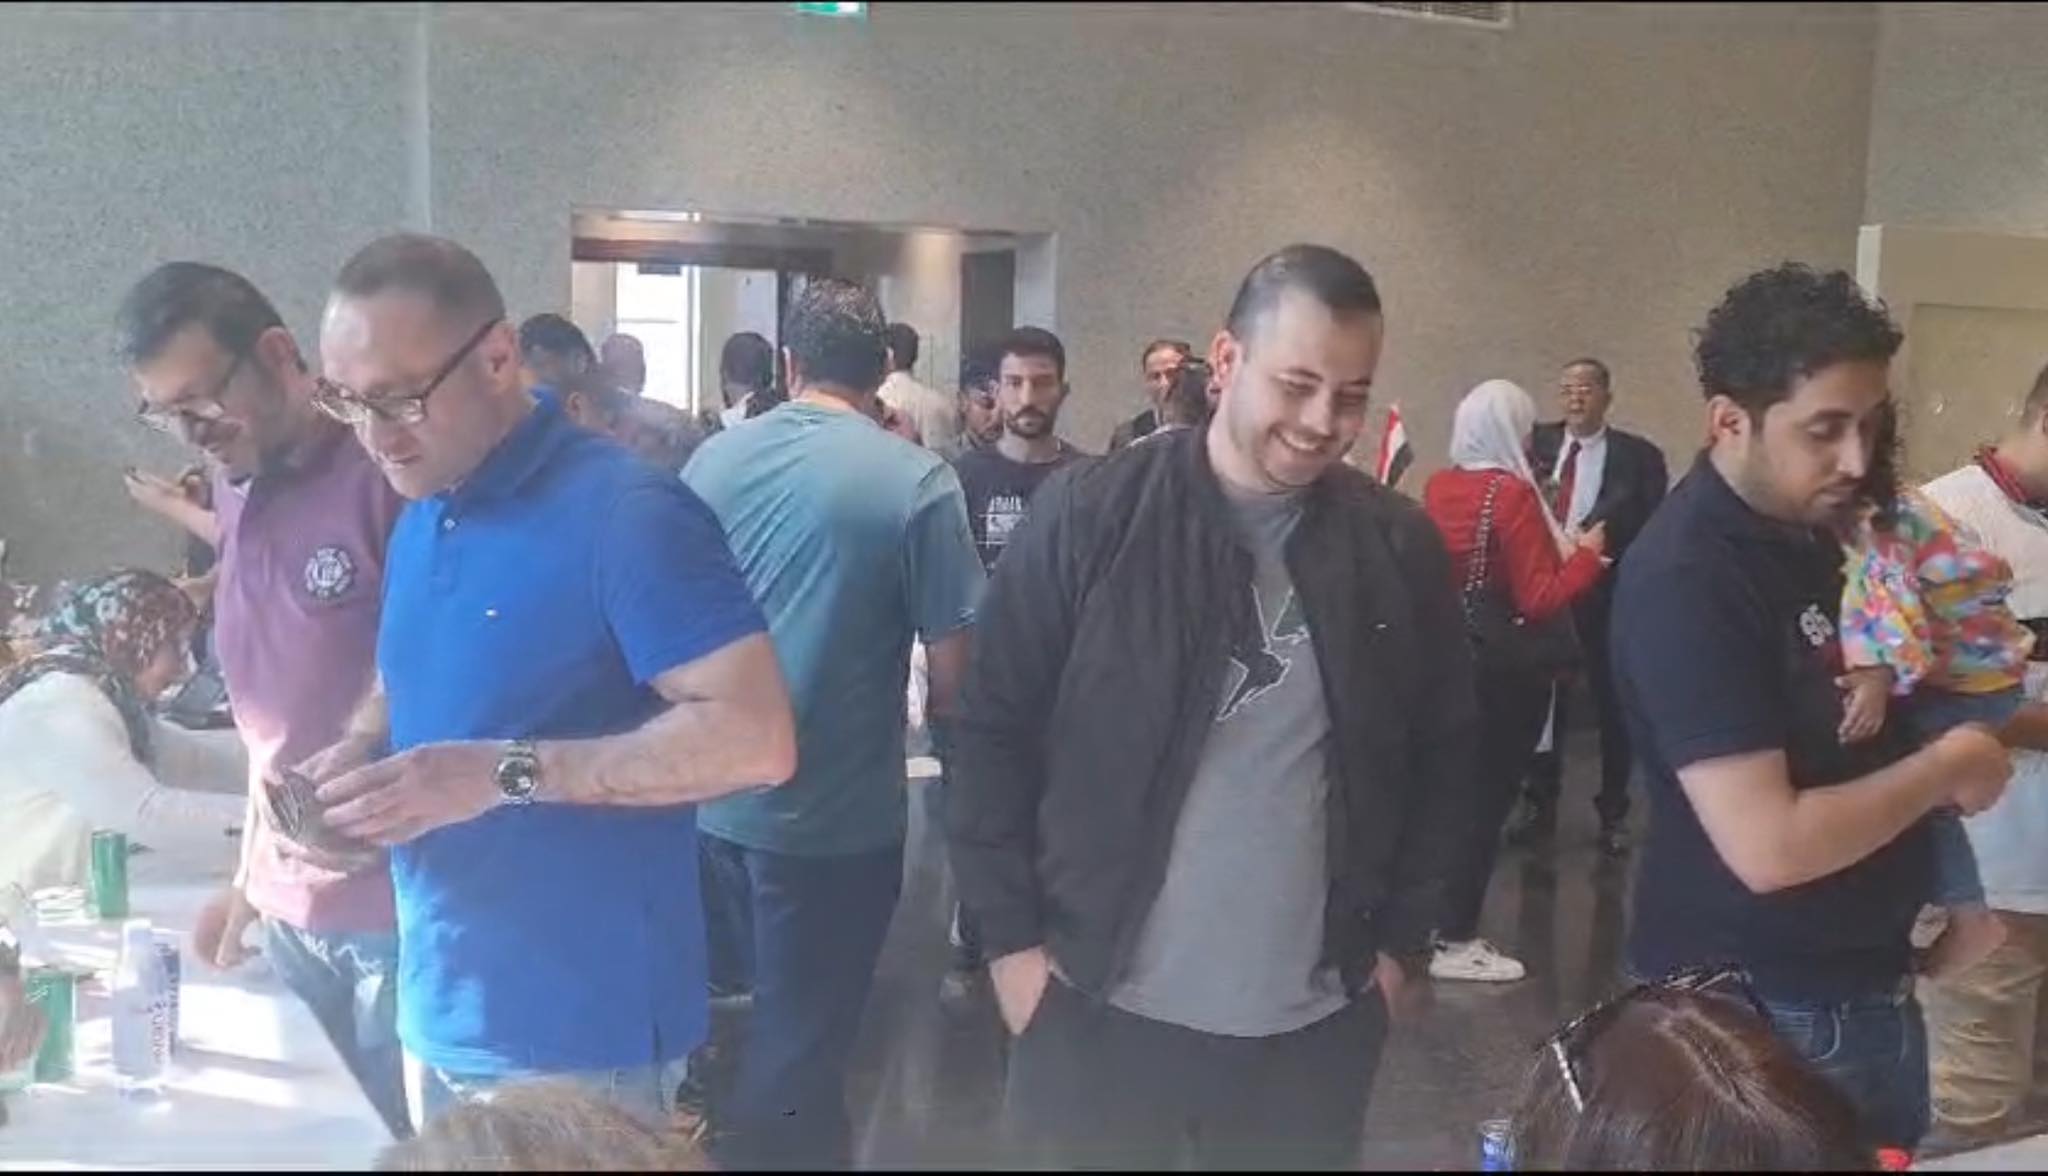 السفير المصري بالإمارات مشاركة المصريين في الانتخابات مشهد مشرف يعكس مكانة الوطن ومعدن المواطن| فيديو 